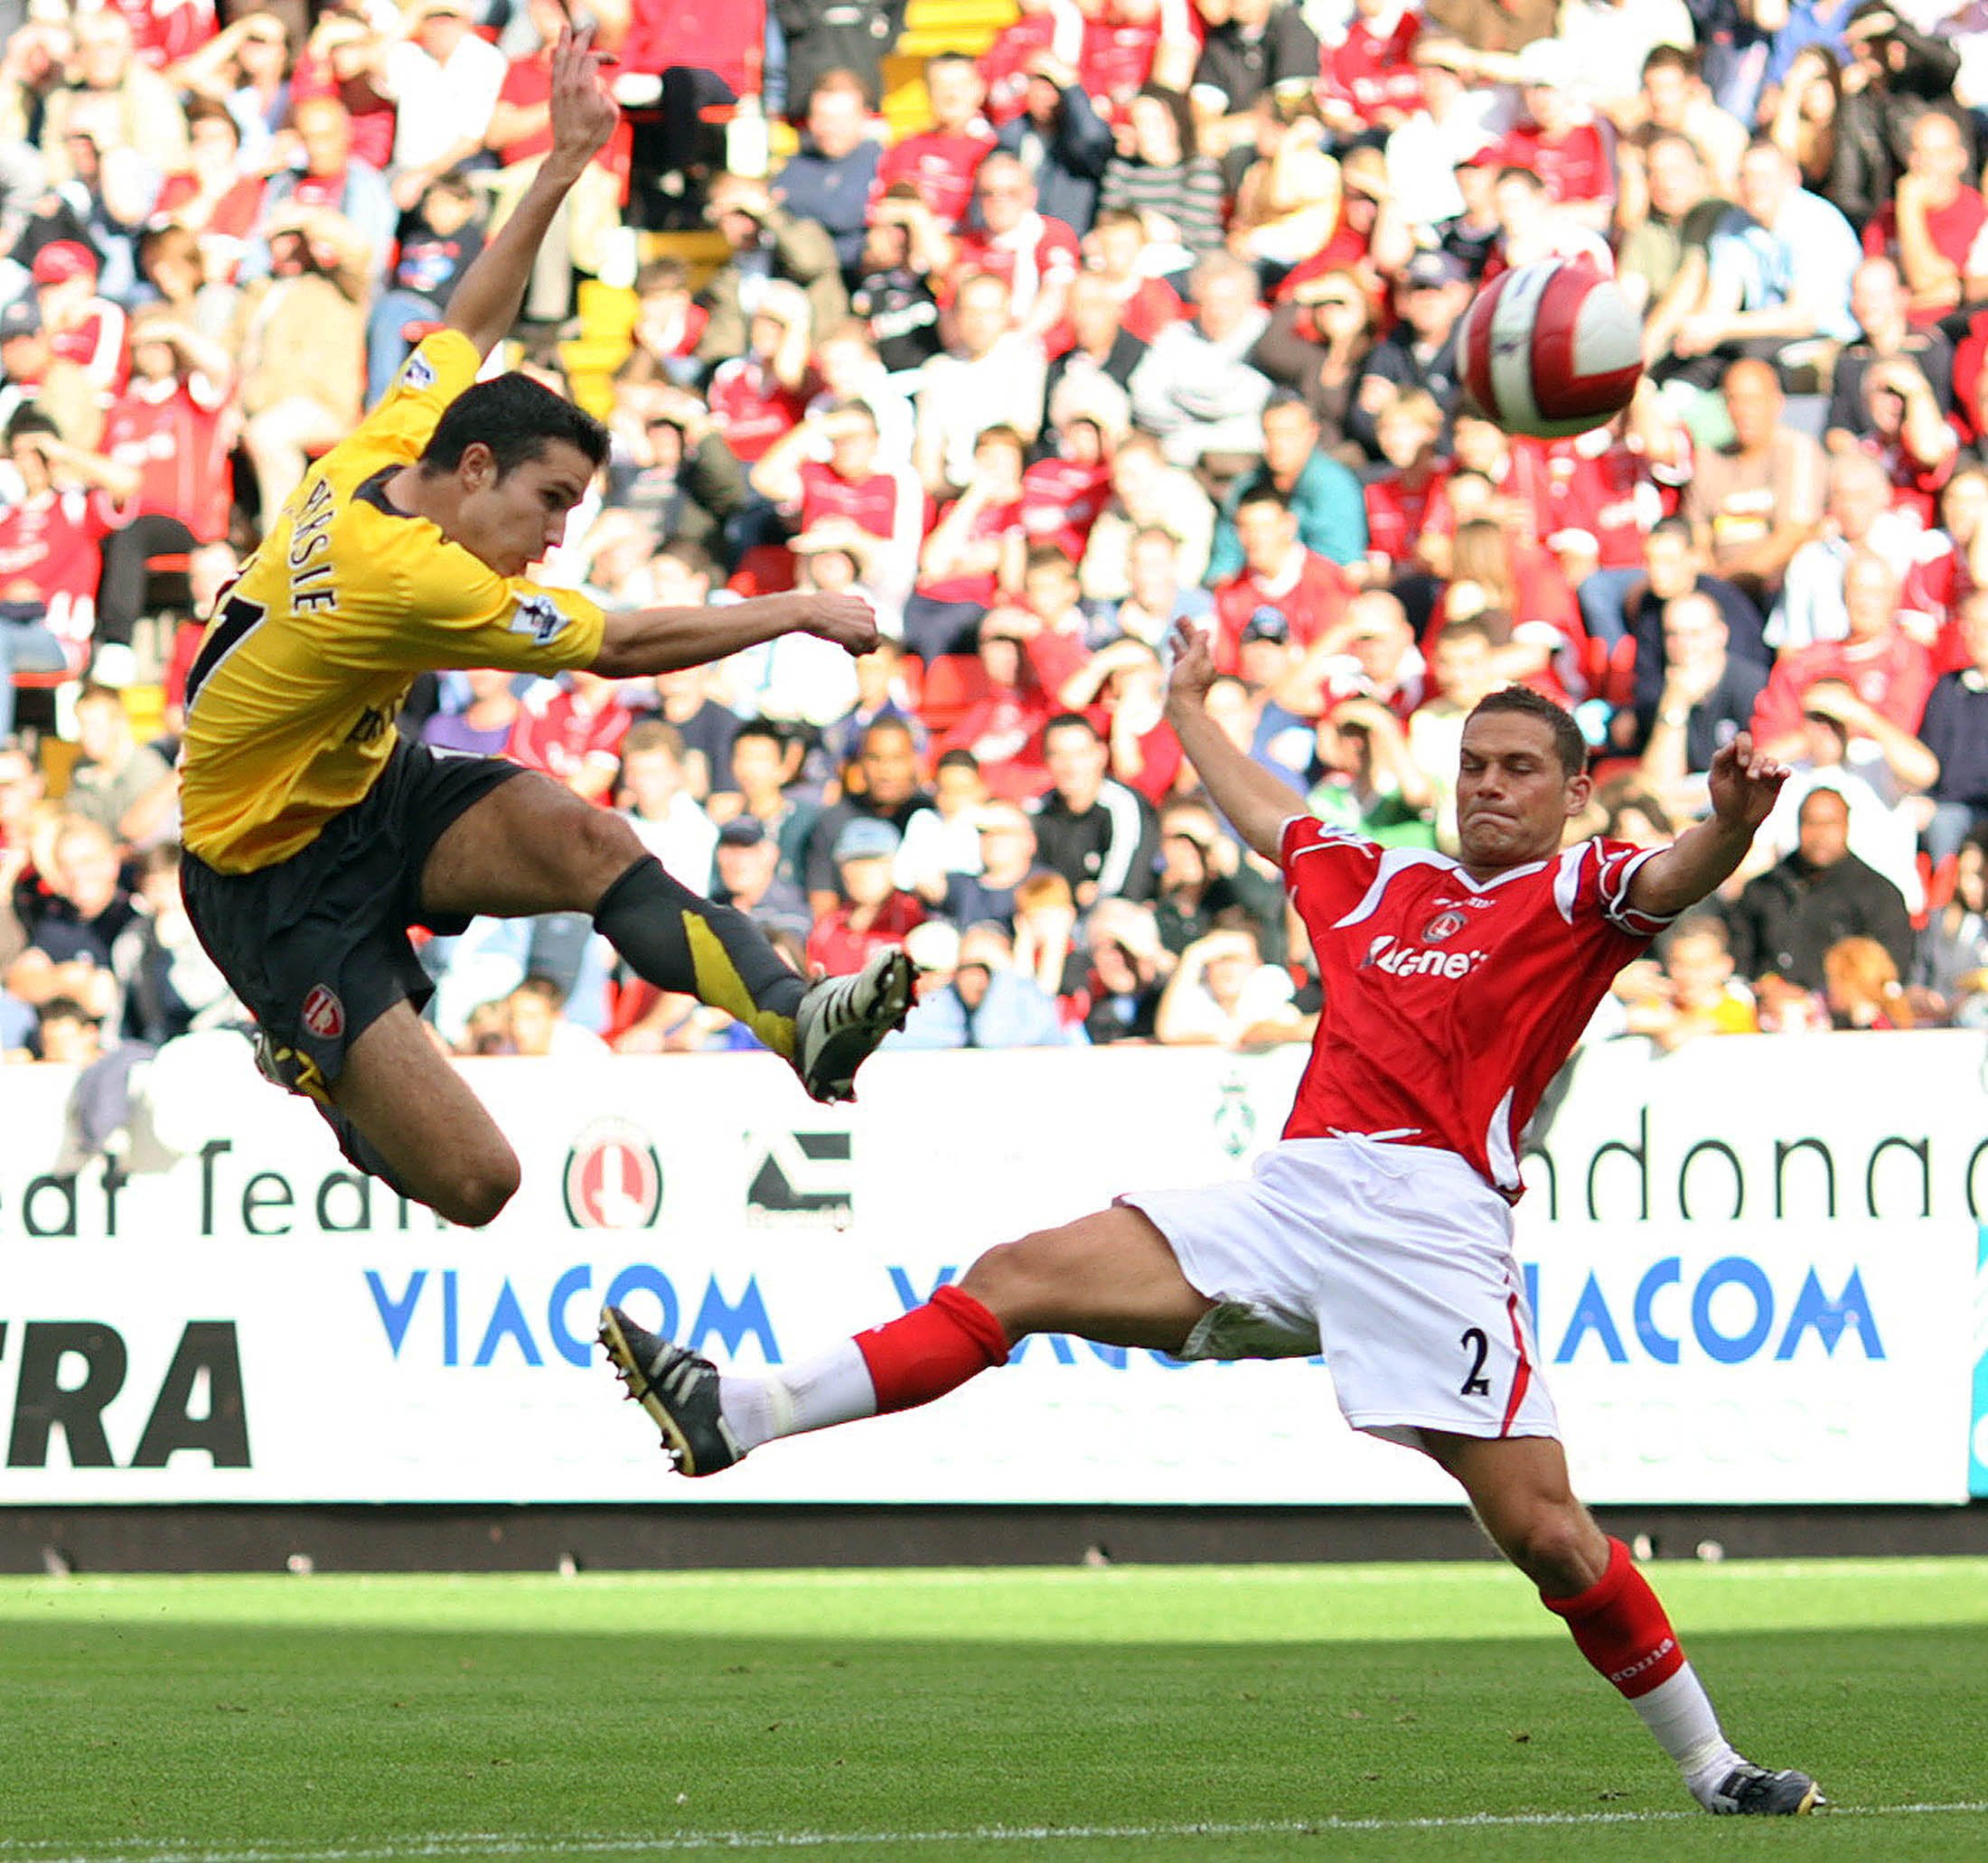 Der Stürmer erzielte 2006 gegen Charlton einen sensationellen Volleyschuss